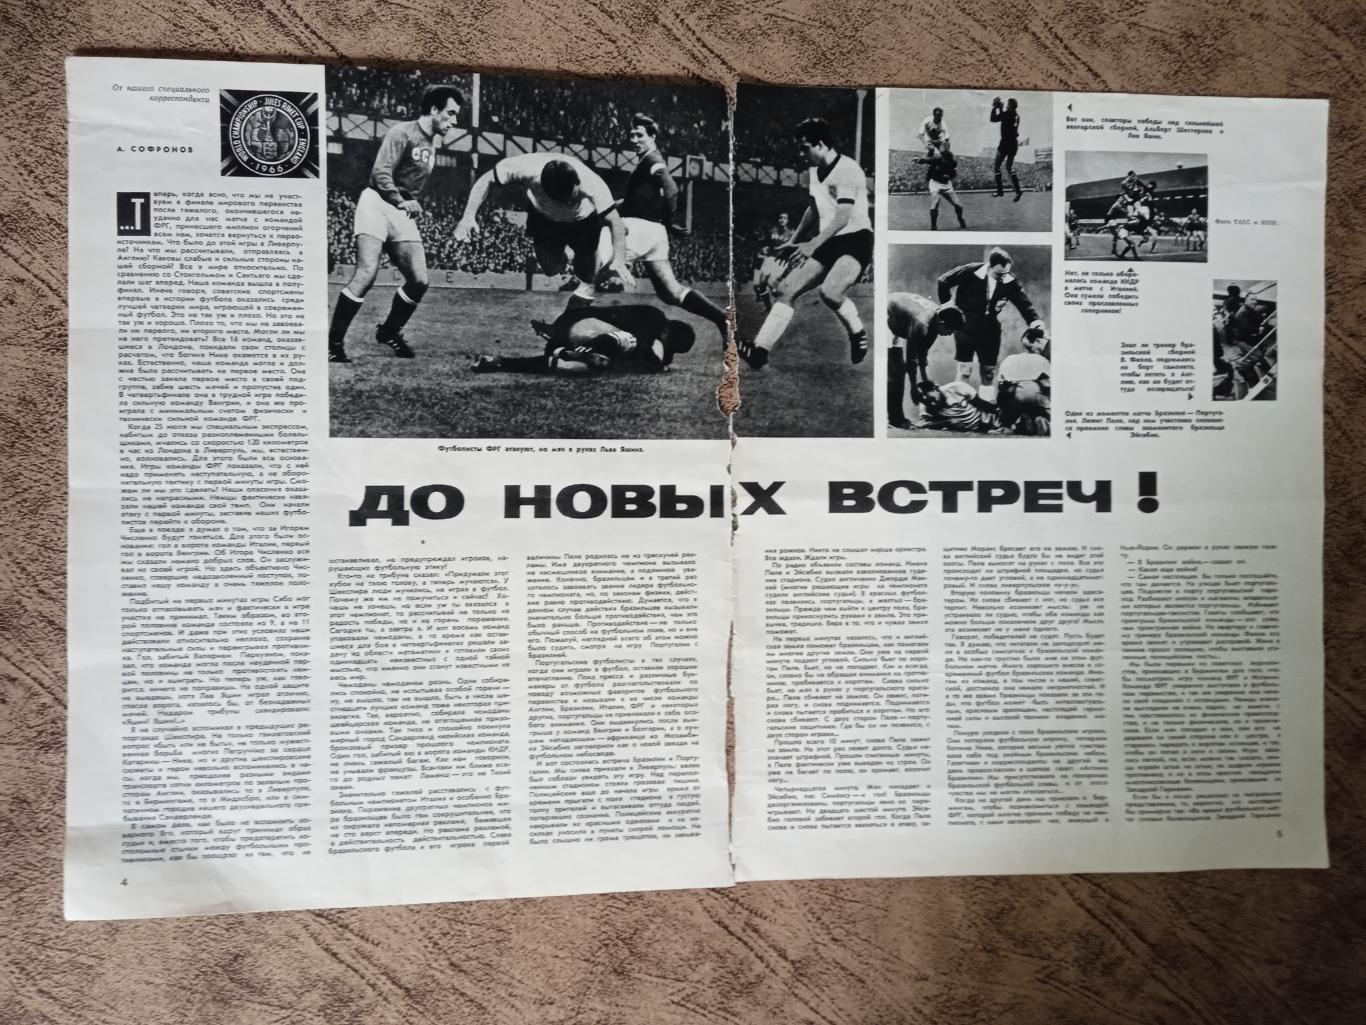 Статья.Футбол.Чемпионат мира 1966.Англия.Журнал Огонек 1966 г. (2).